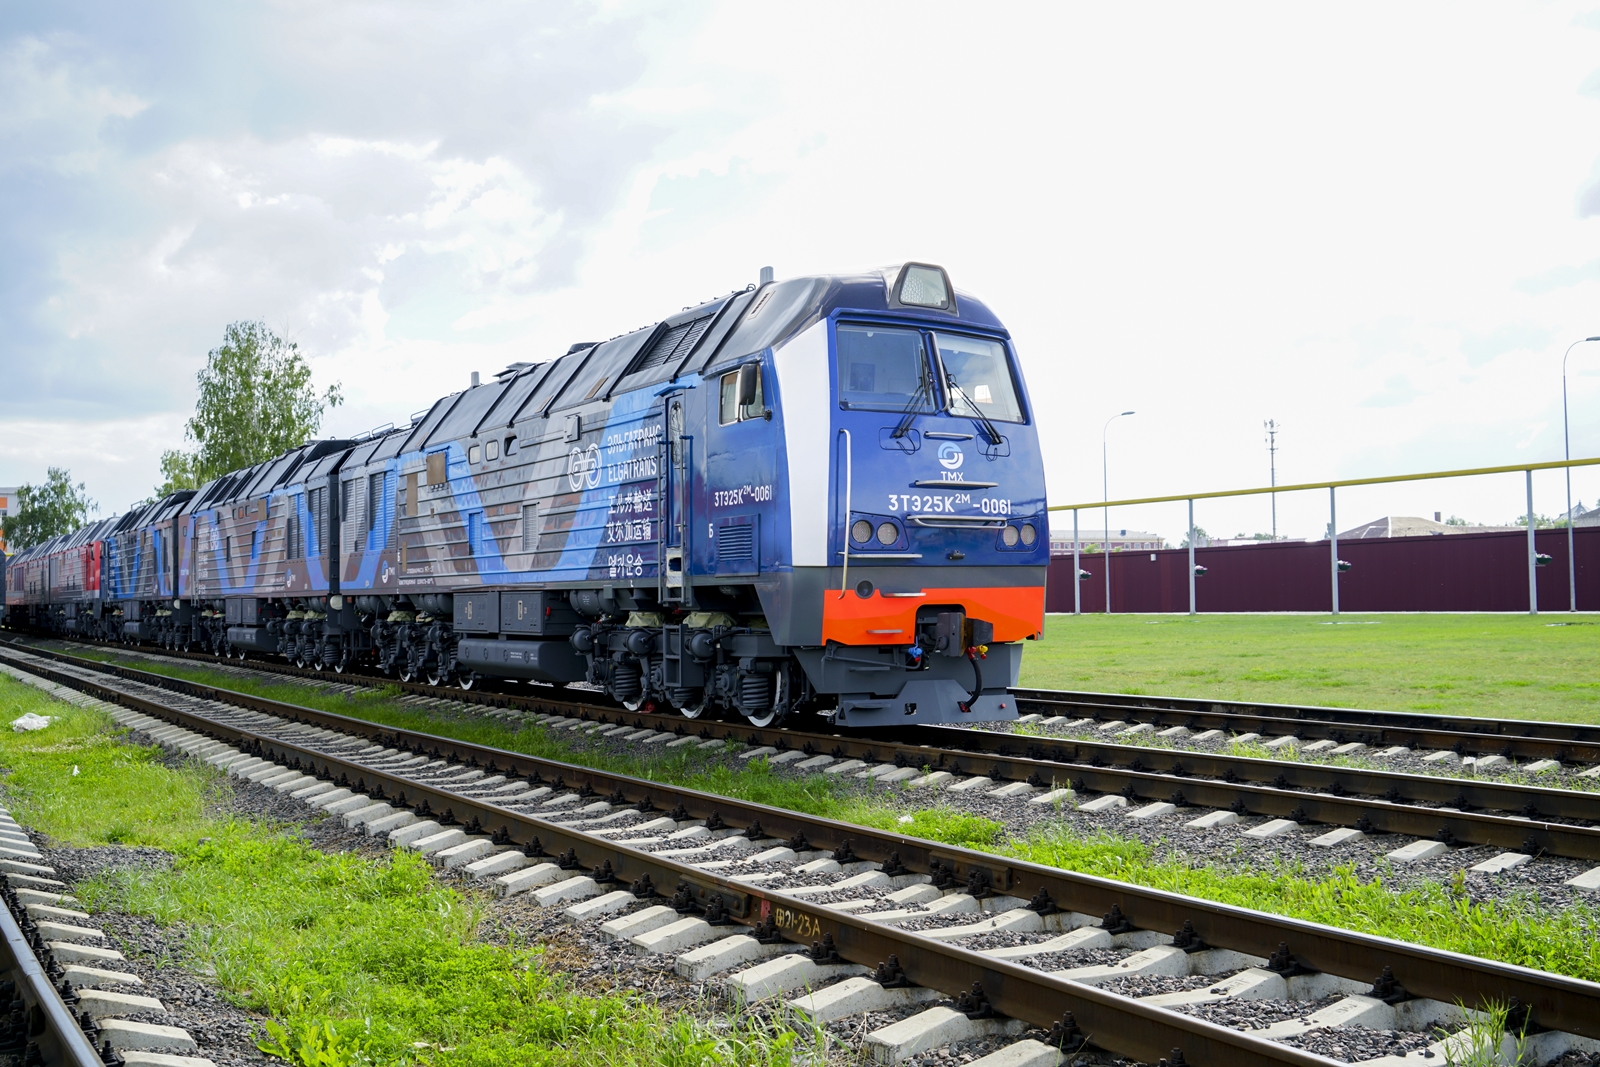 A Transzmasholding nemcsak az orosz állami vasút RZSD-nek, hanem az Elga-Trans magánvasútnak is épített már a háromszekciós behemótokból (kép forrása: Transzmasholding)